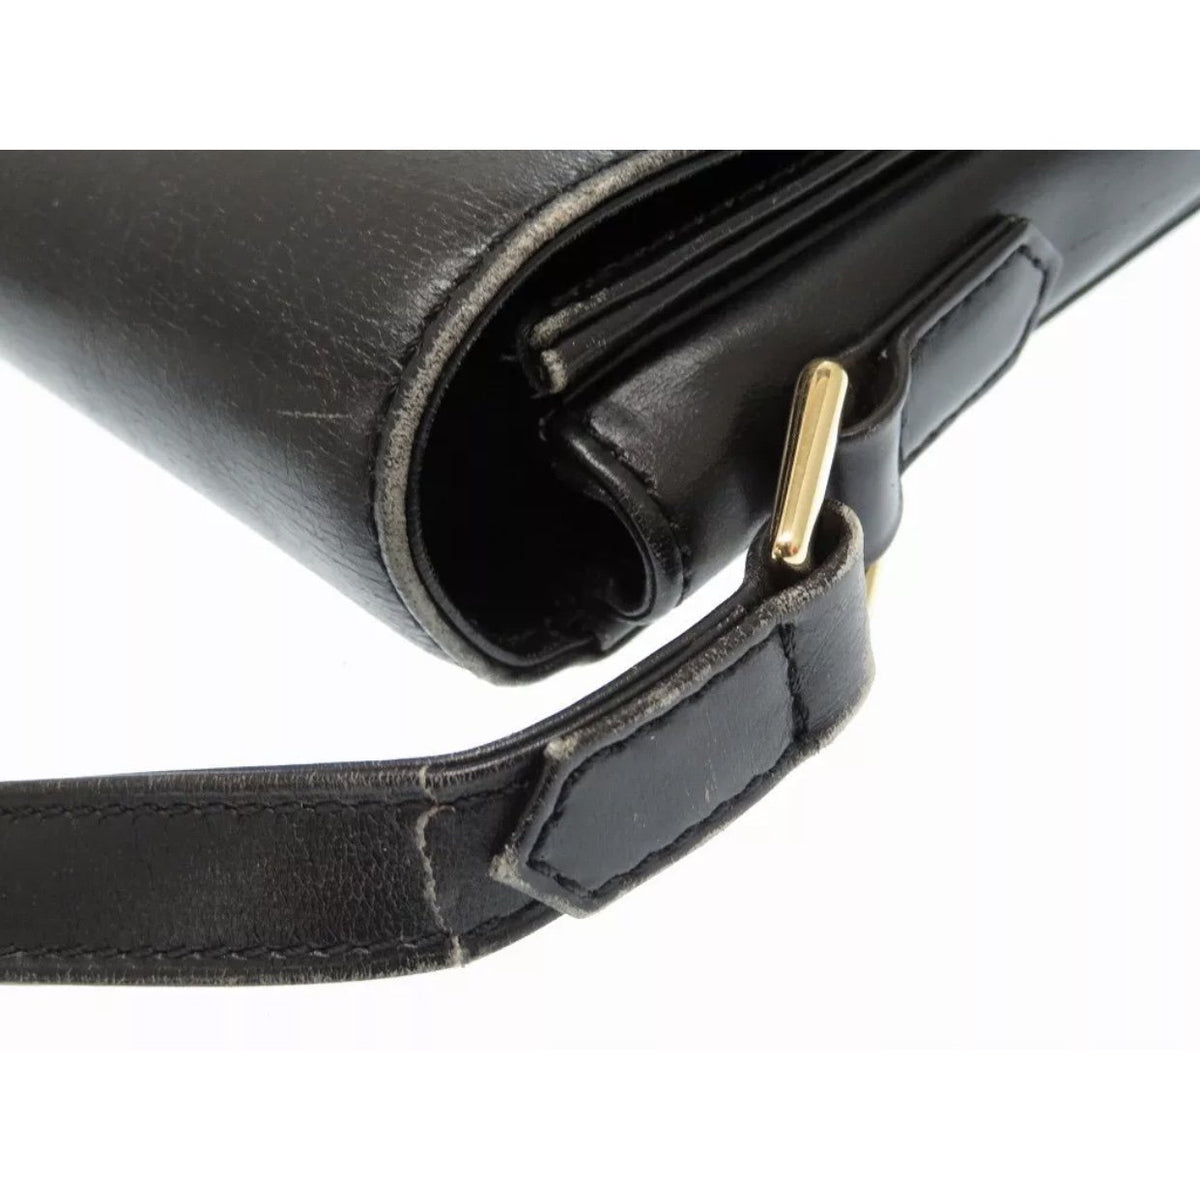 Buy Authentic Pre-owned Louis Vuitton Lv Epi Black Noir Verseau Shoulder Bag  Purse M52812 220029 from Japan - Buy authentic Plus exclusive items from  Japan